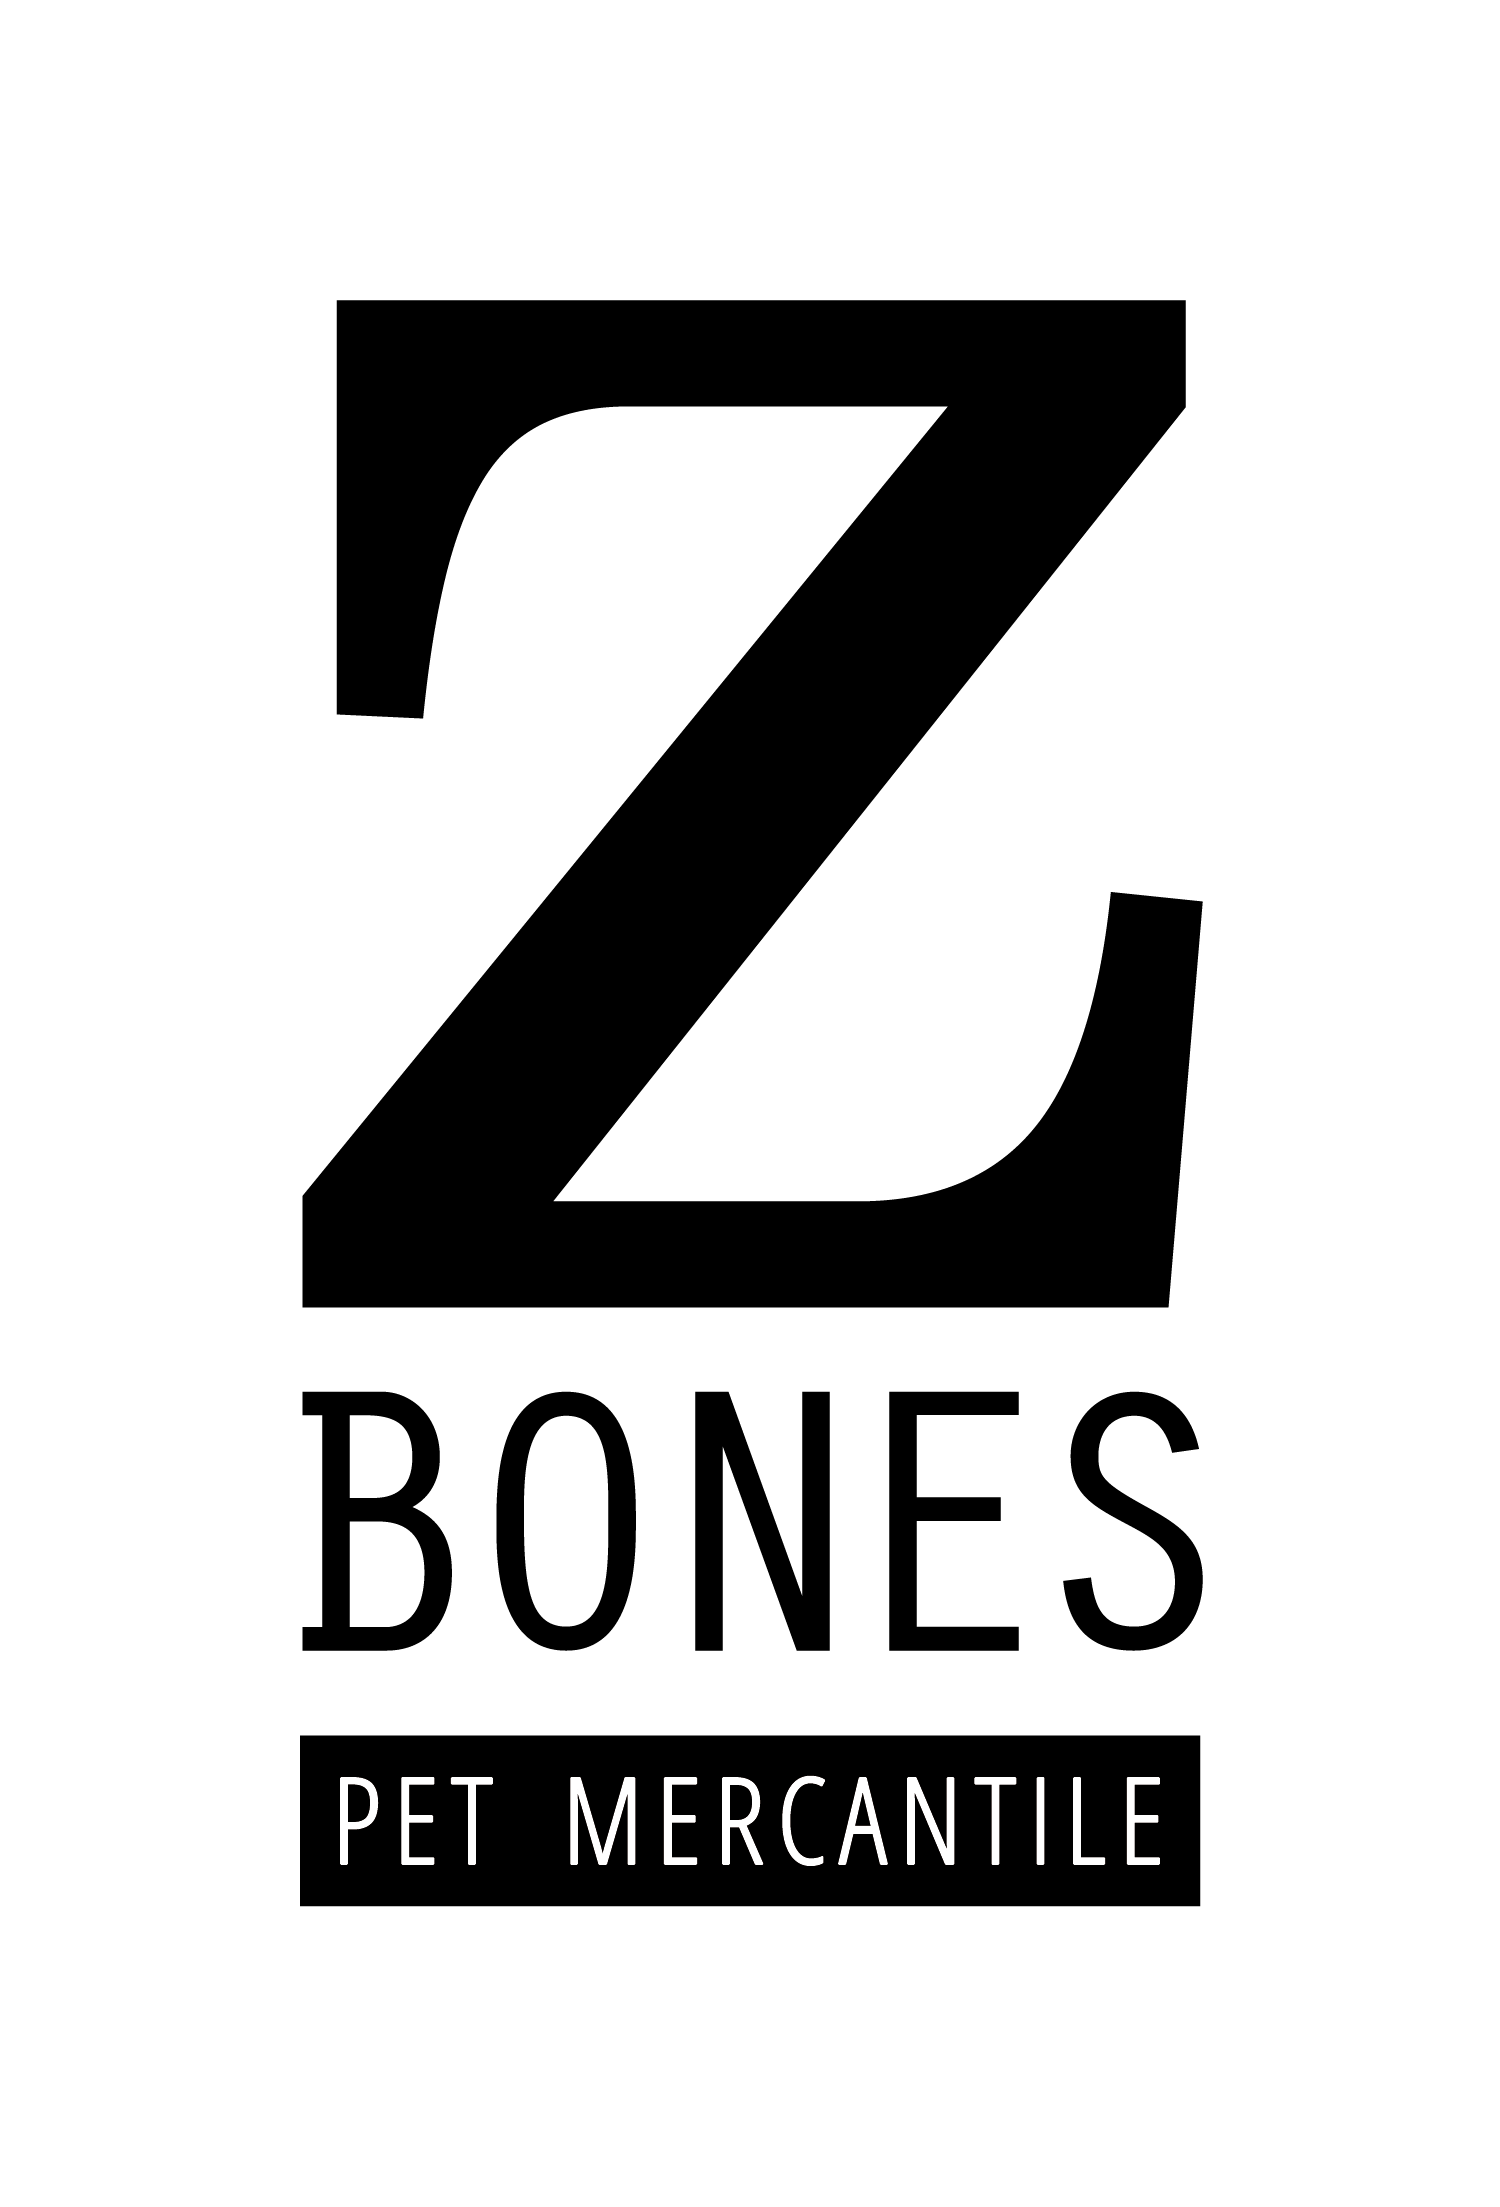 zbones_logo_with_tagline_final_b_w-1585259519.png